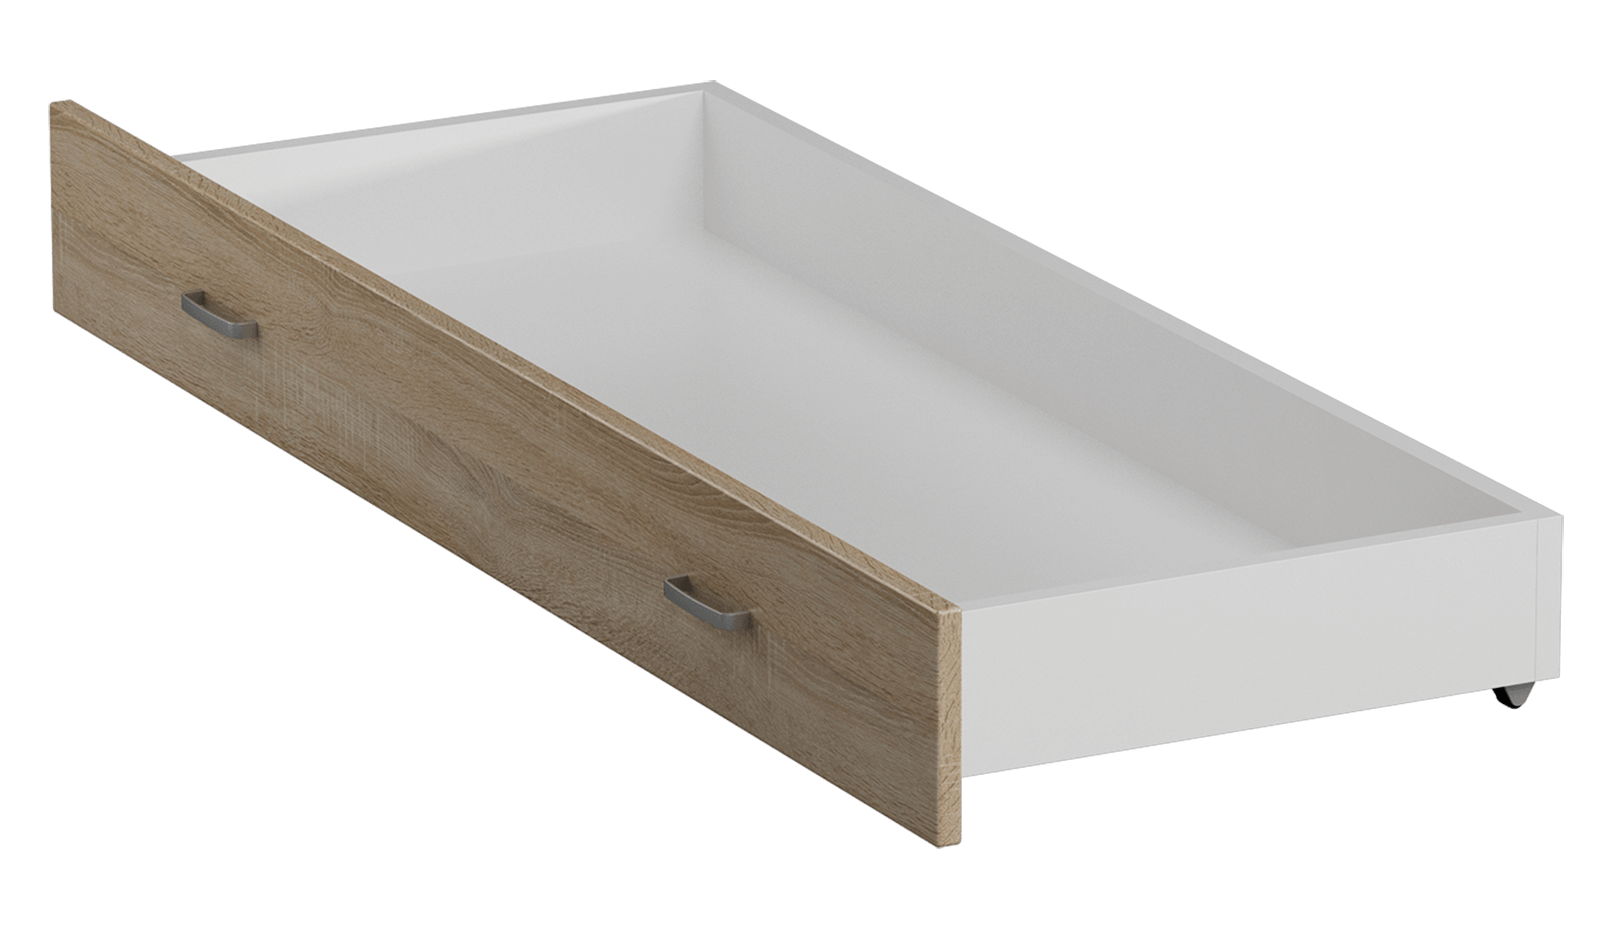 Úložný box pod posteľ IKAROS 159 cm, dub sonoma